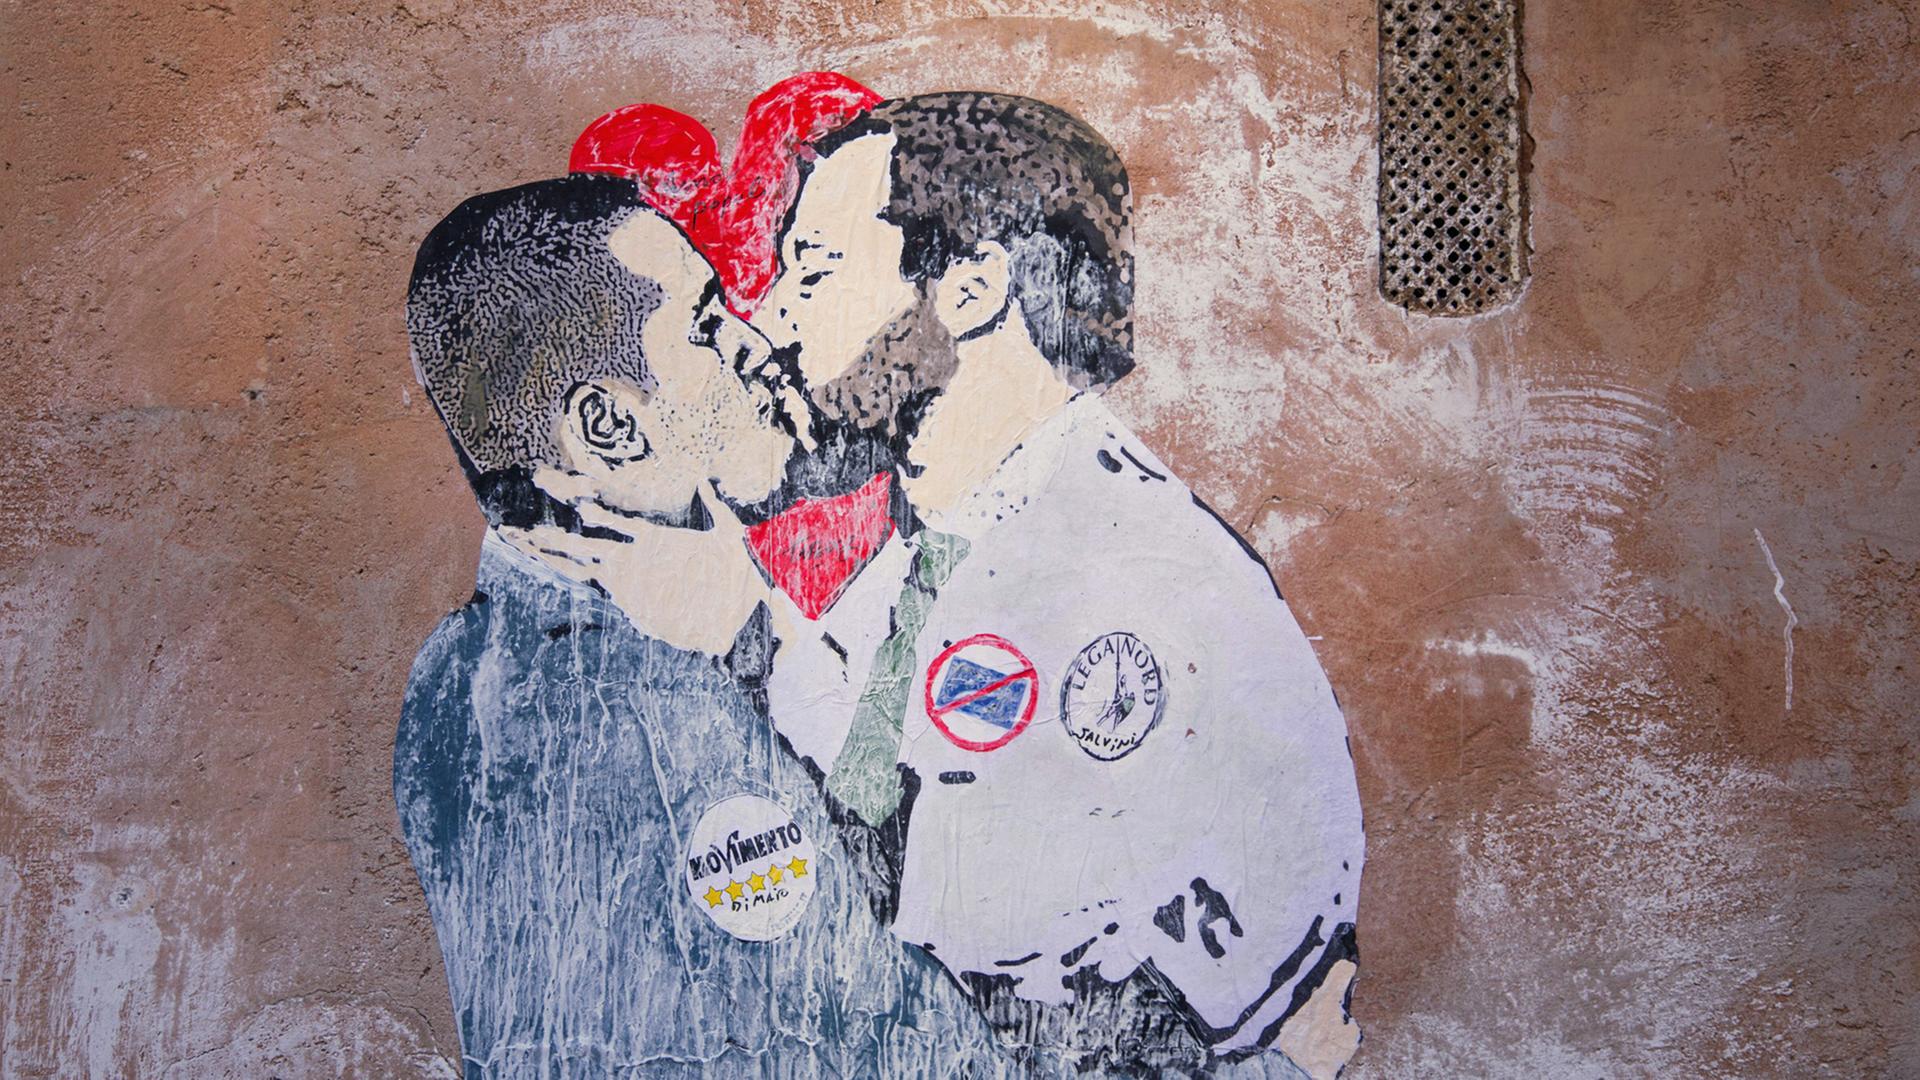 Ein Streetart-Motiv in Rom kommentiert die Regierungsbildung von Luigi di Maio, Parteichef der Fünf-Sterne-Bewegung, und Matteo Salvini, Vorsitzender der rechtspopulistischen Partei Lega, aufgenommen am 23.3.2018